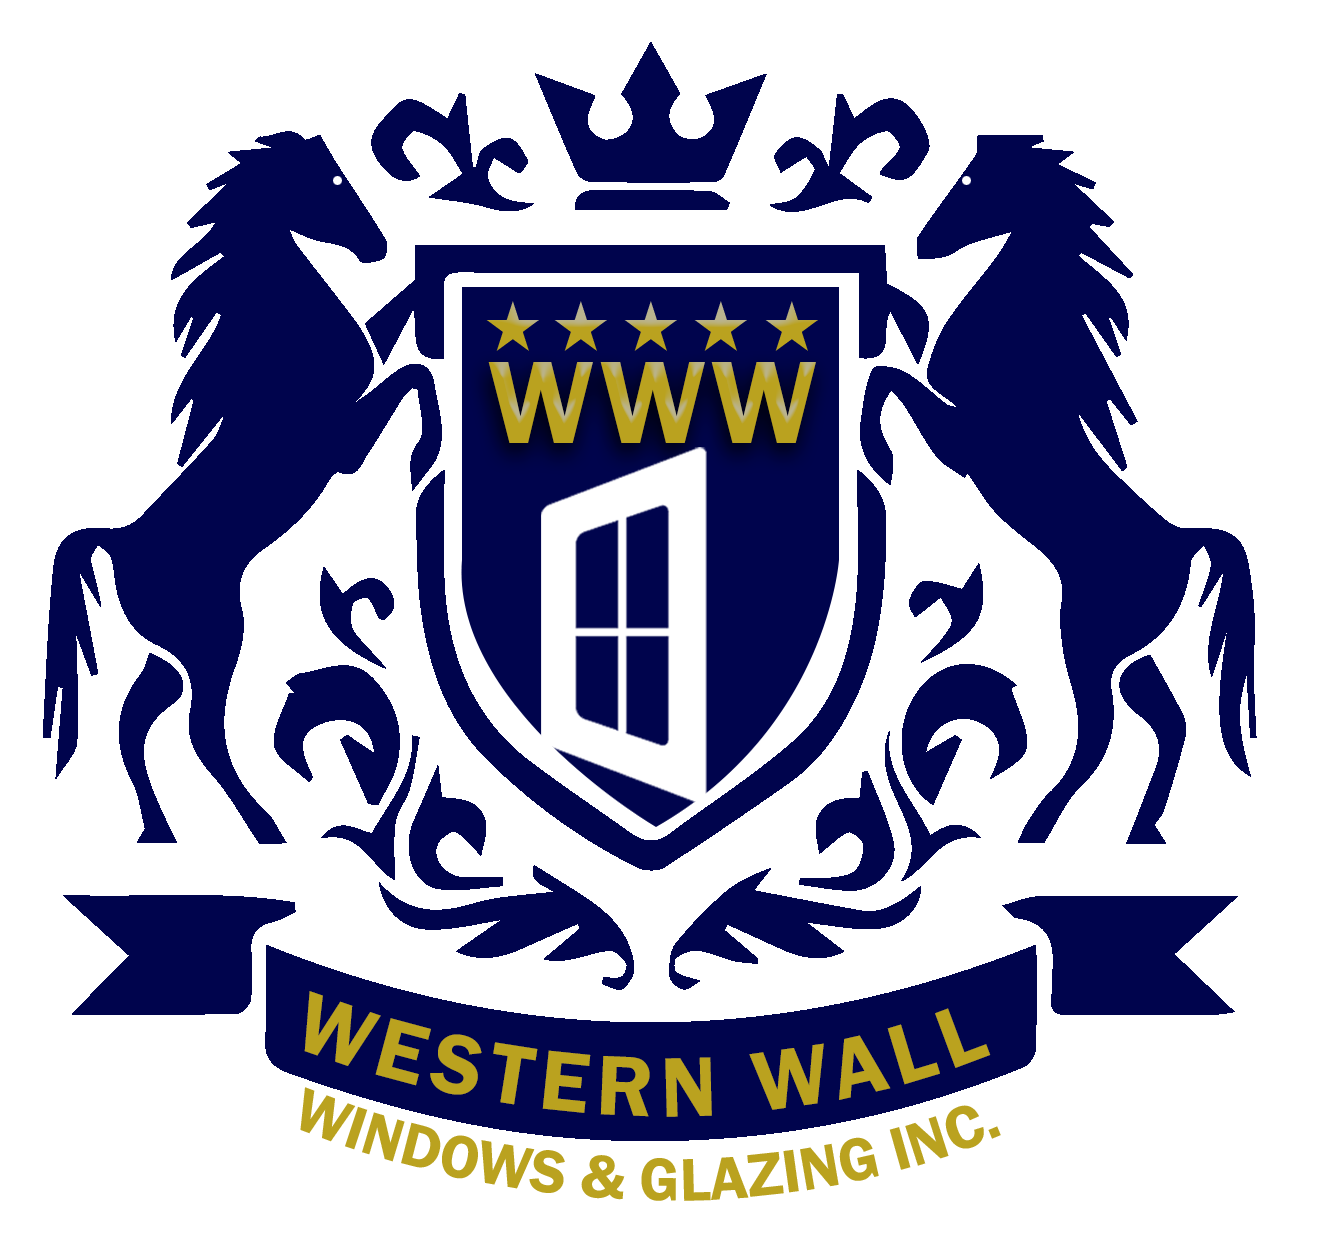 Western Wall Windows & Glazing Inc.